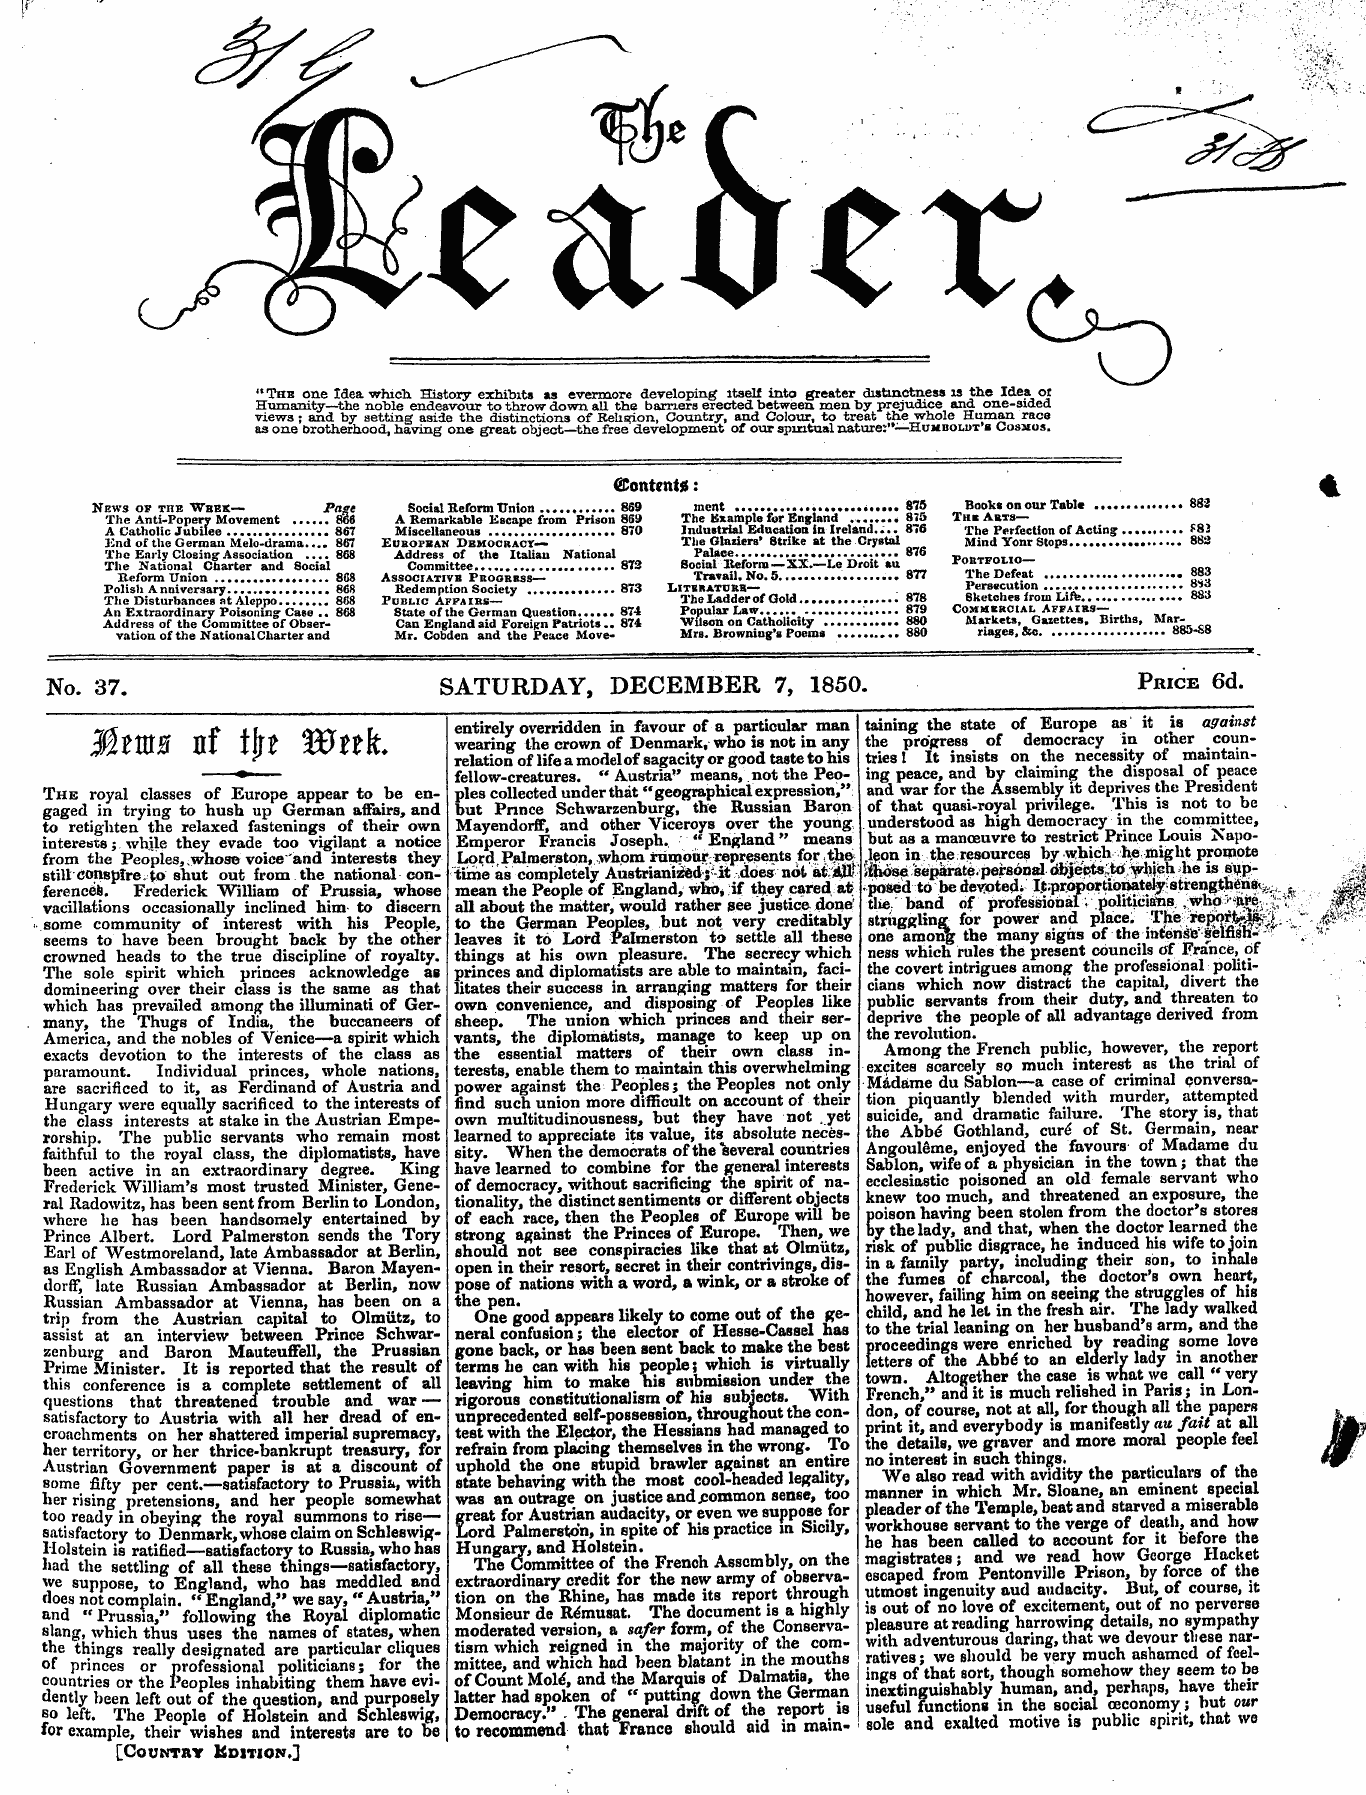 Leader (1850-1860): jS F Y, Country edition - No. 37. Saturday, December 7, 1850. Pric...